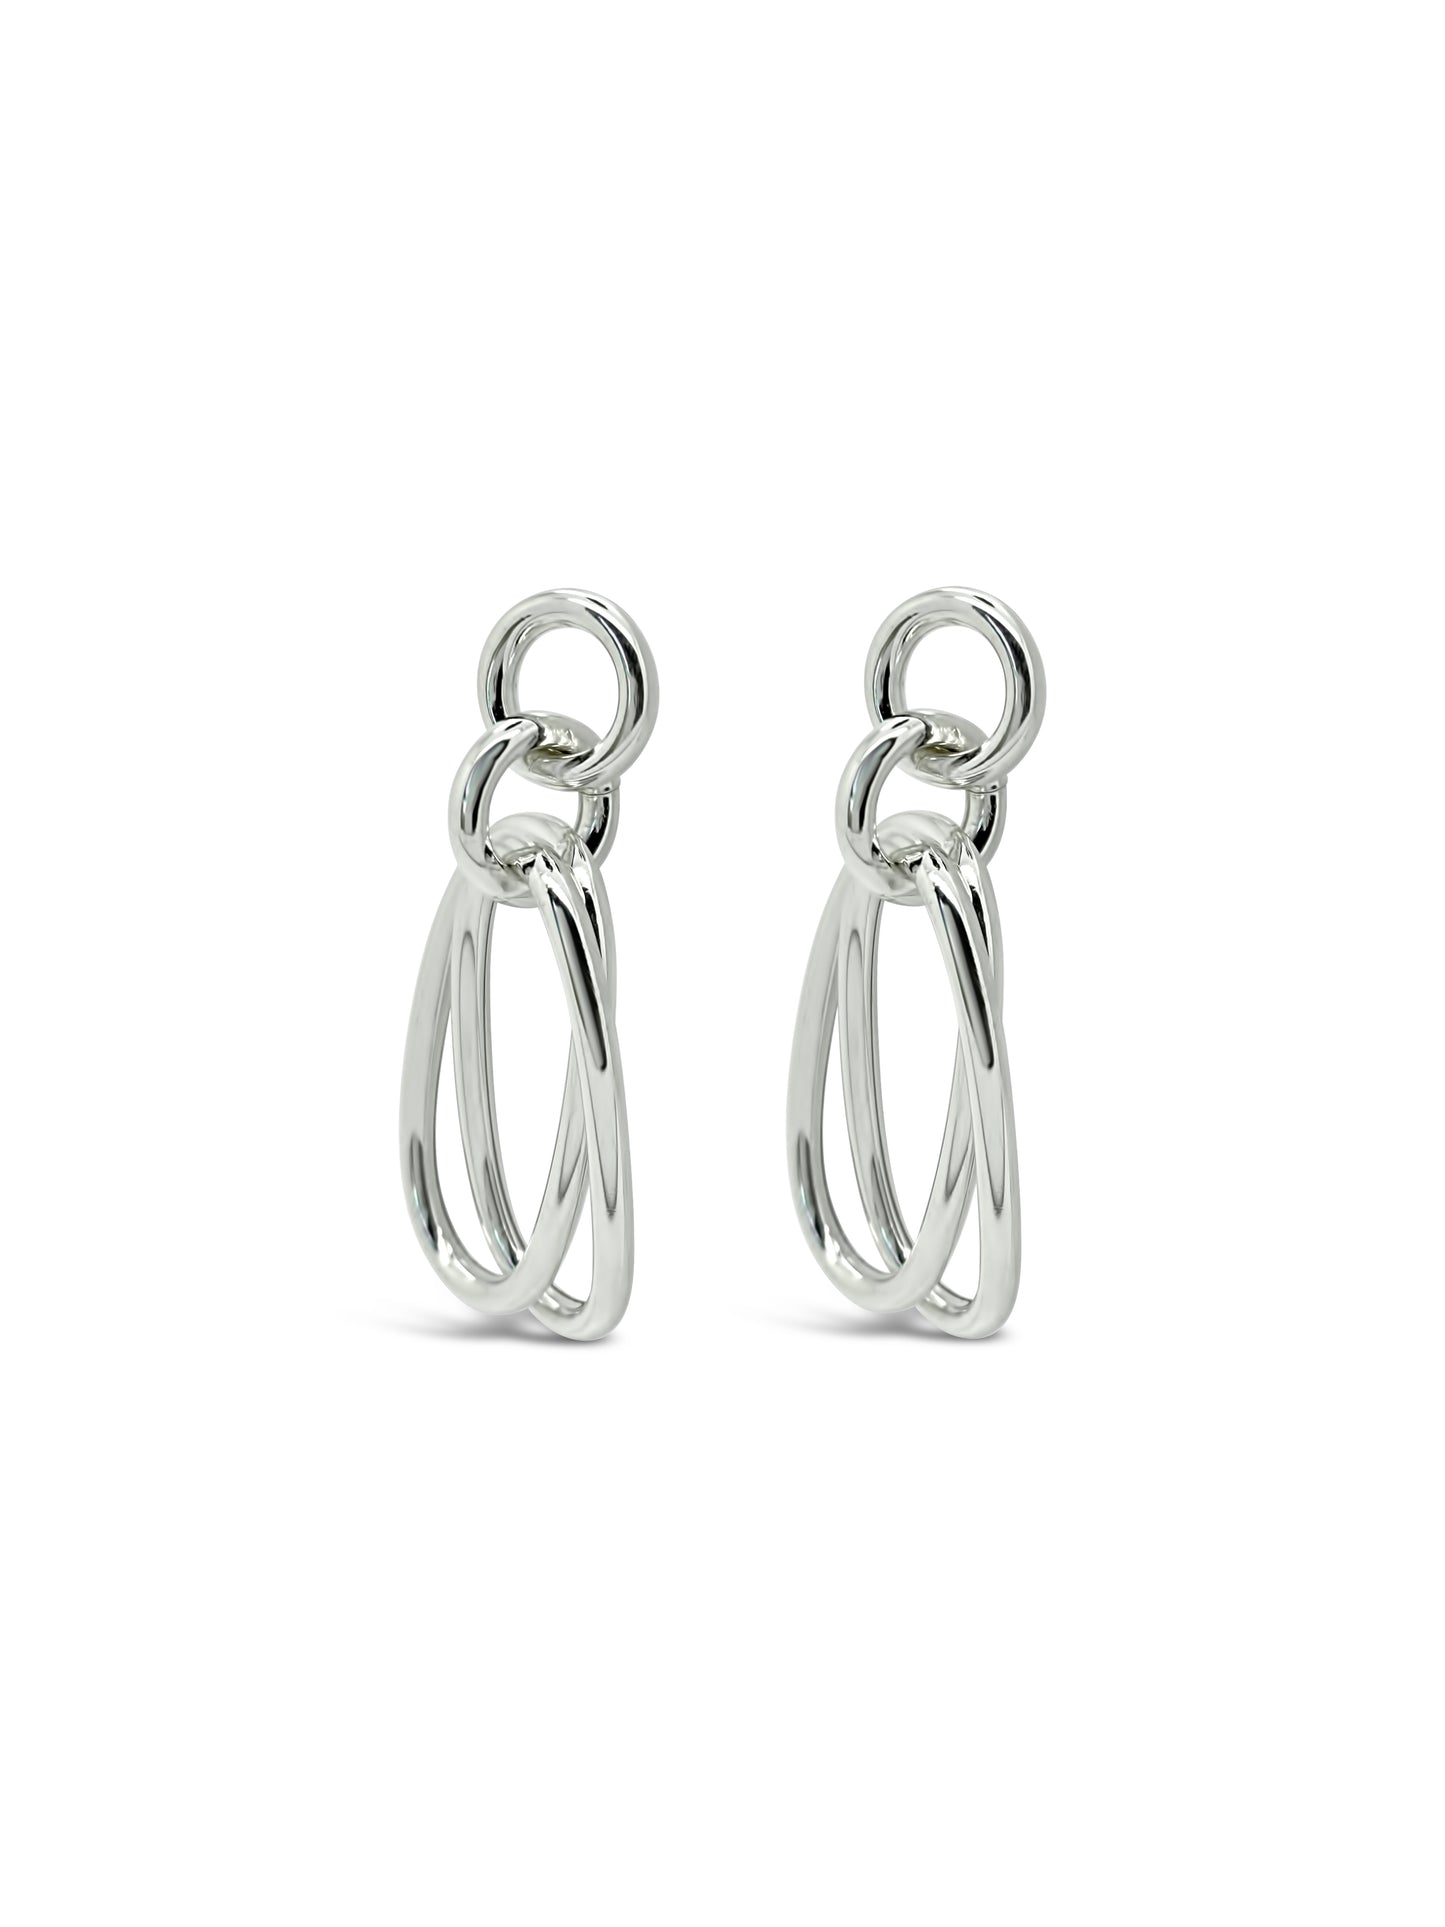 Oval Link'd Earrings